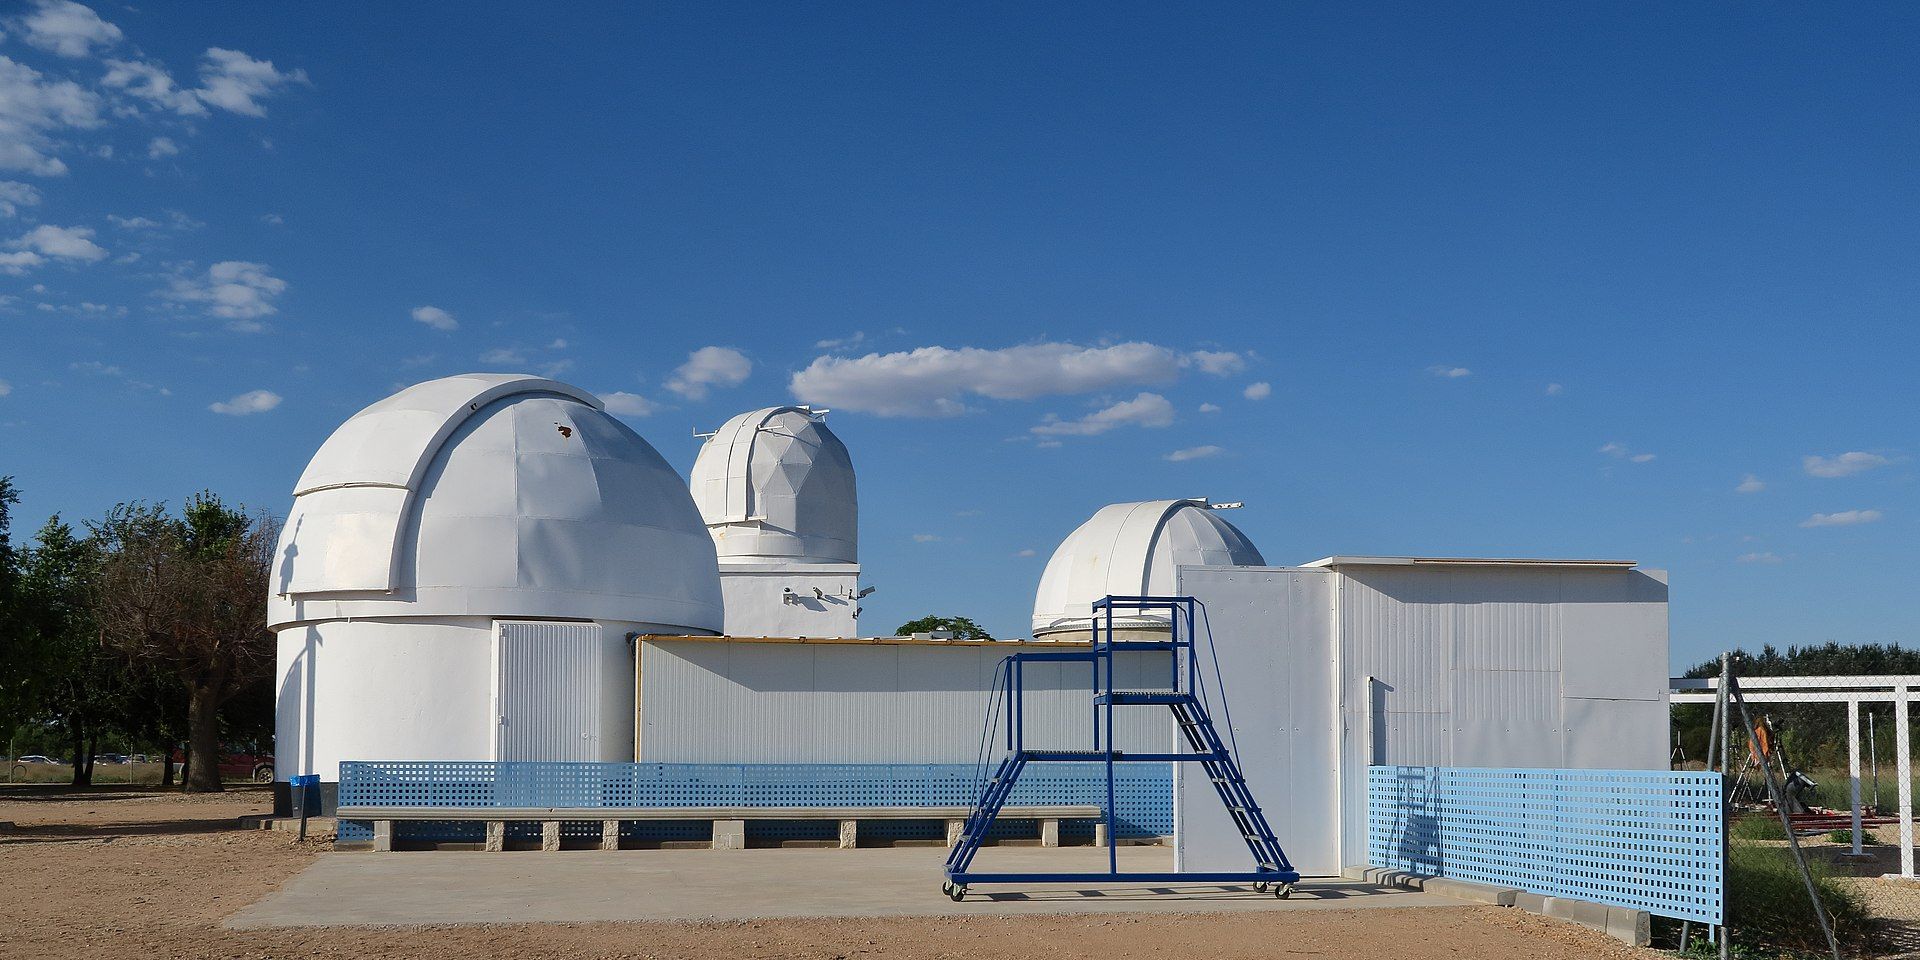 El observatorio artesanal de La Hita, un “sueño único”